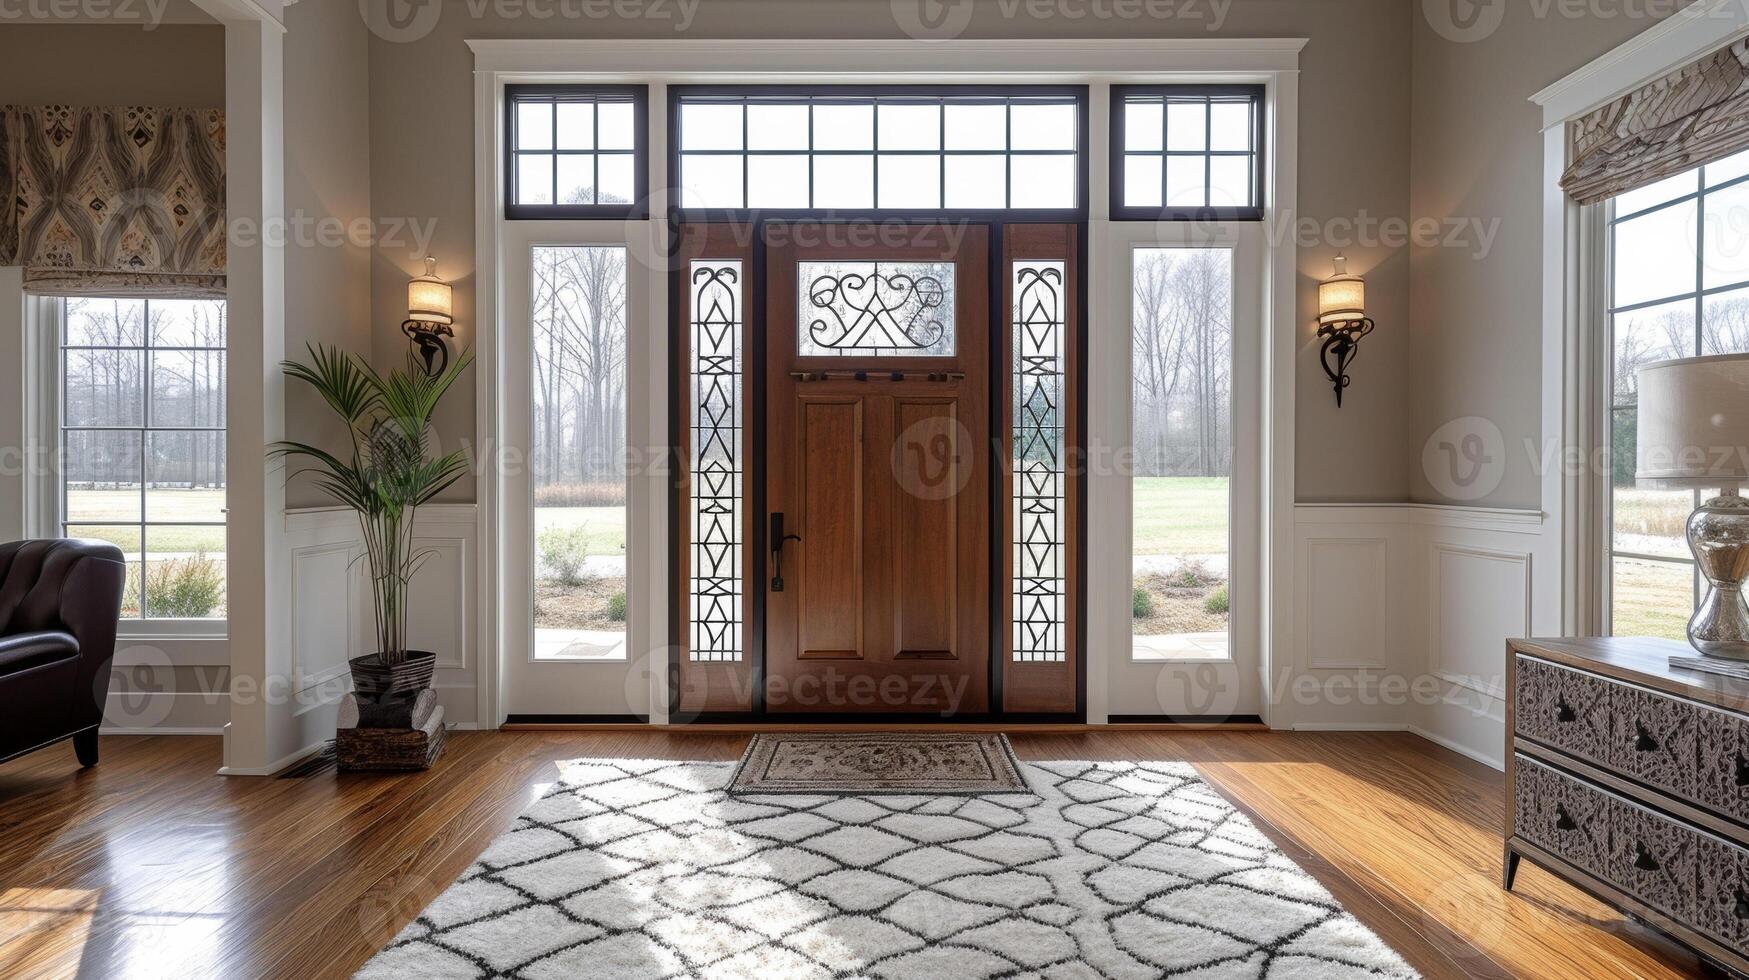 diese dekorativ Glas Paneele hinzufügen ein berühren von Charme zu das Eingang einladend Gäste in das Zuhause mit ihr schön Muster und Texturen foto